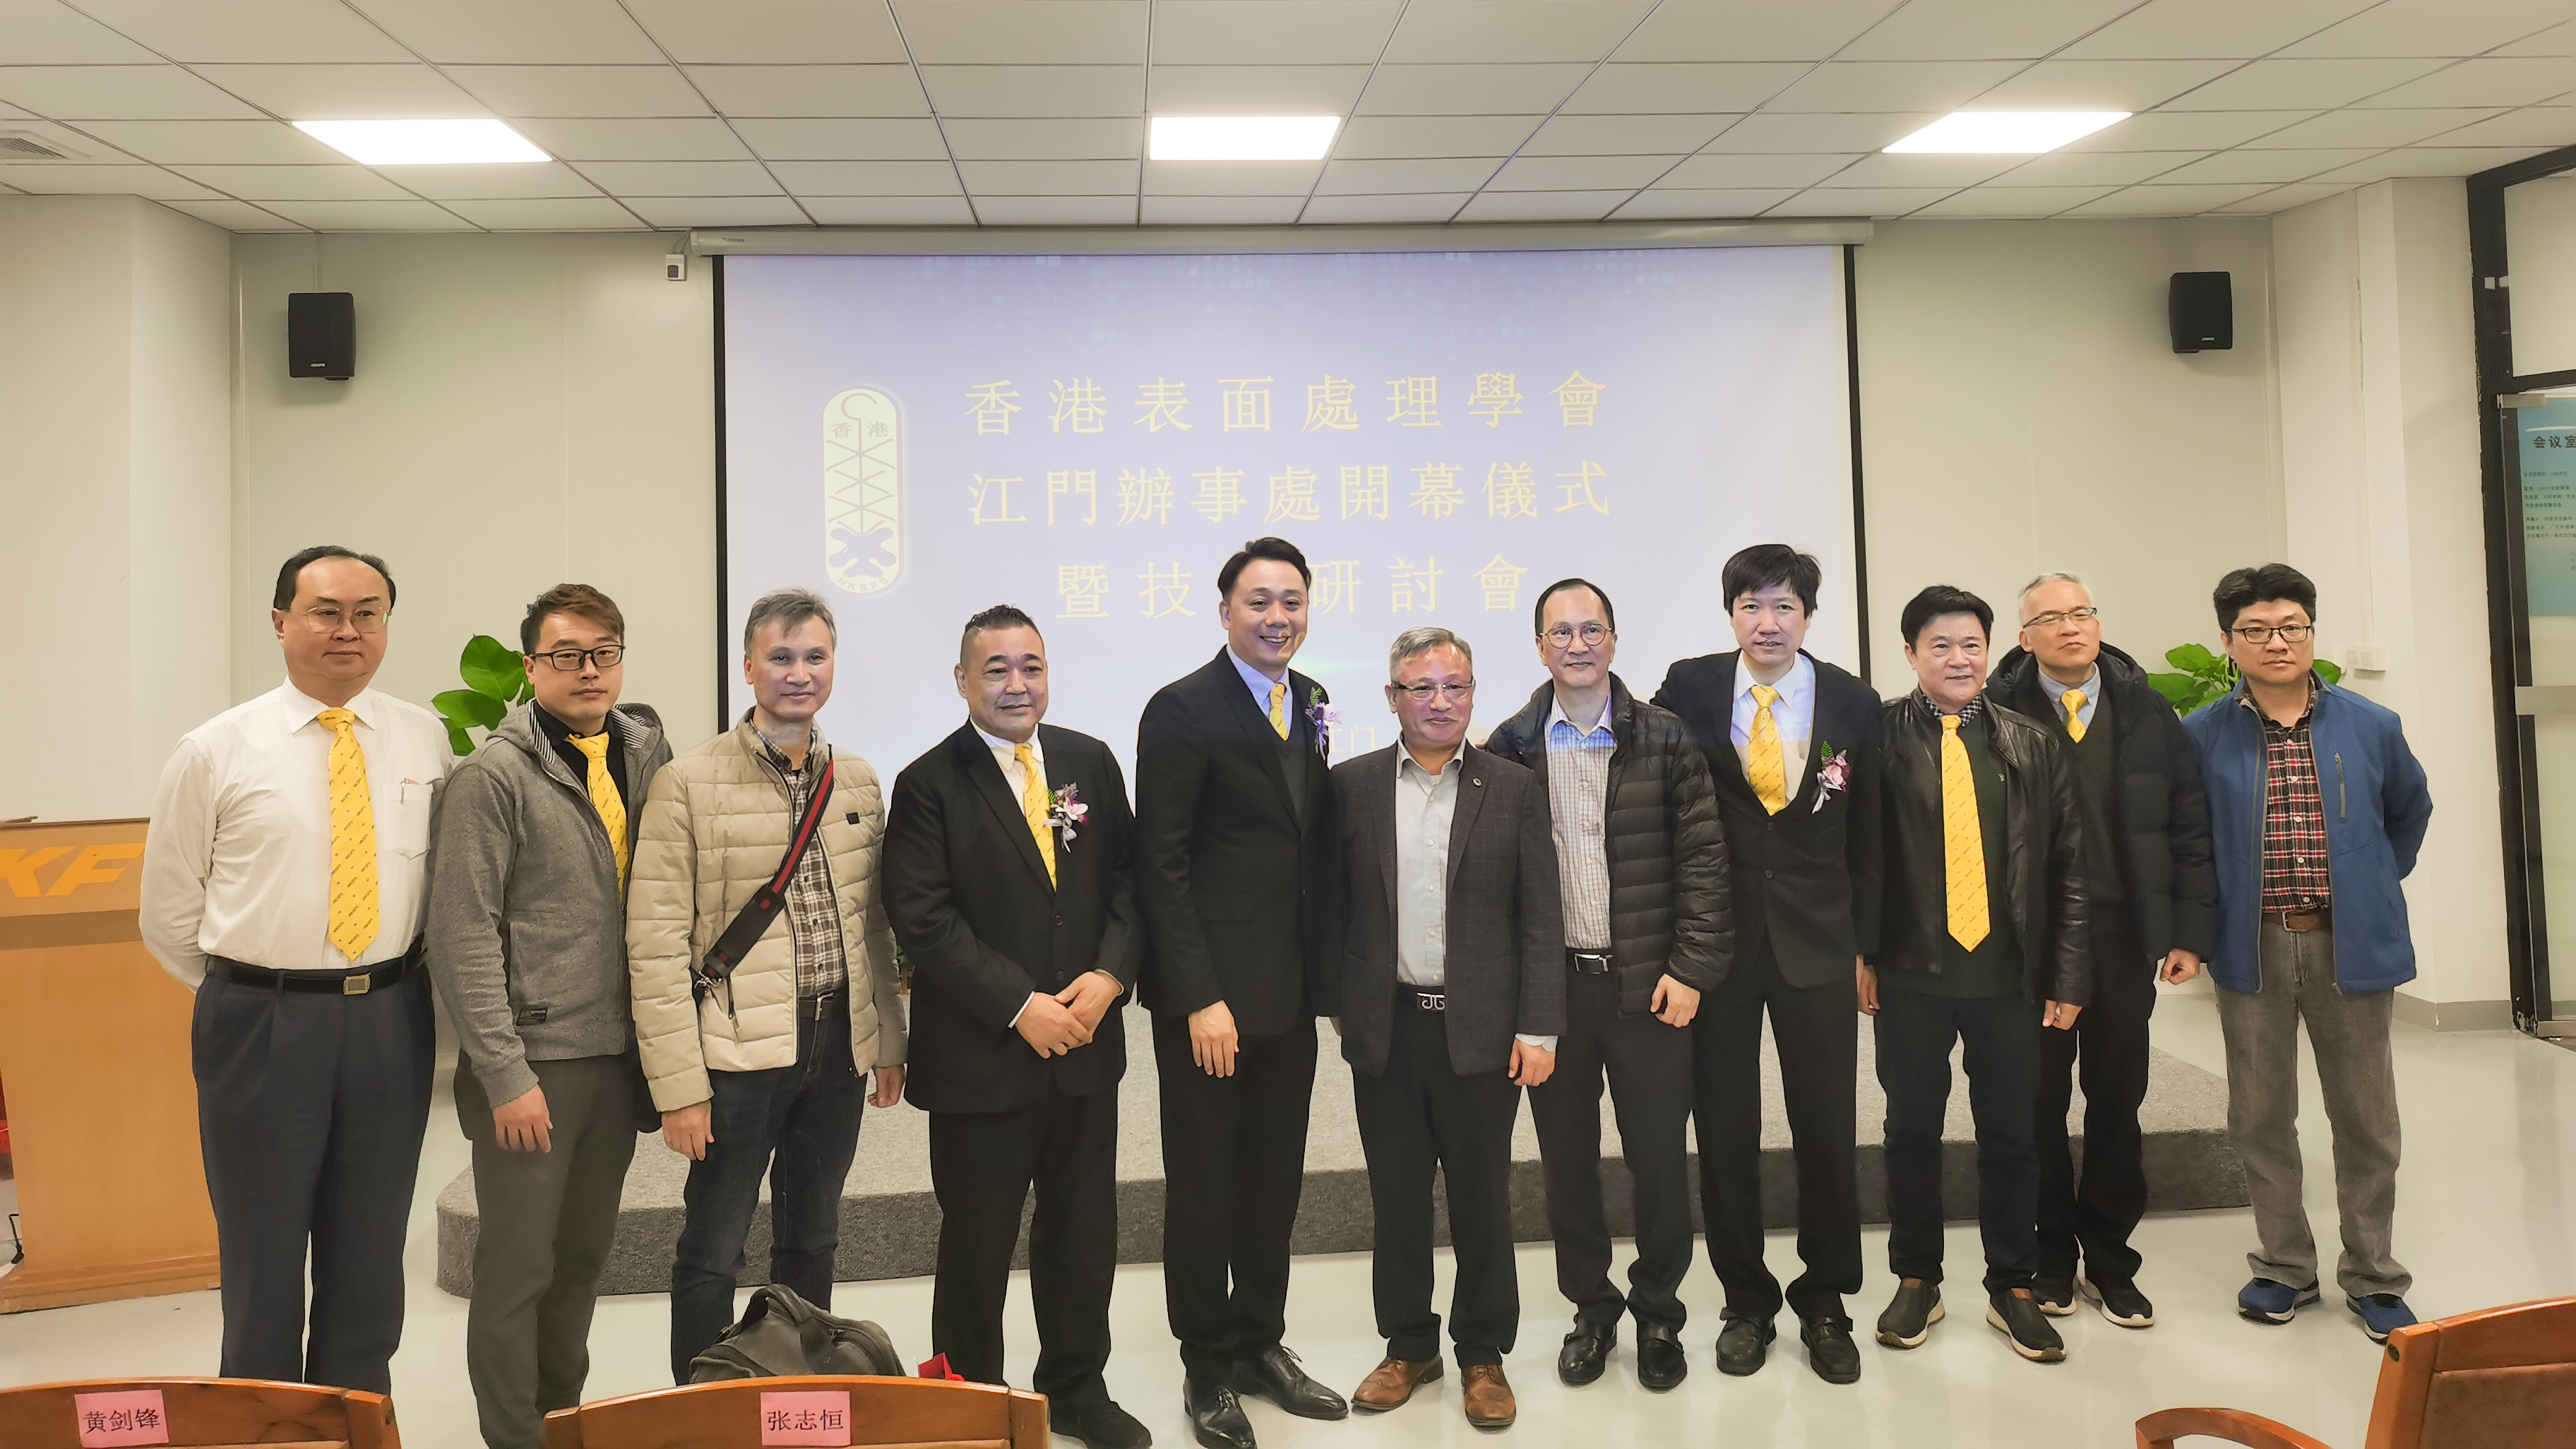 新艾隆受邀参加香港表面处理学会技术研讨会并作主题演讲